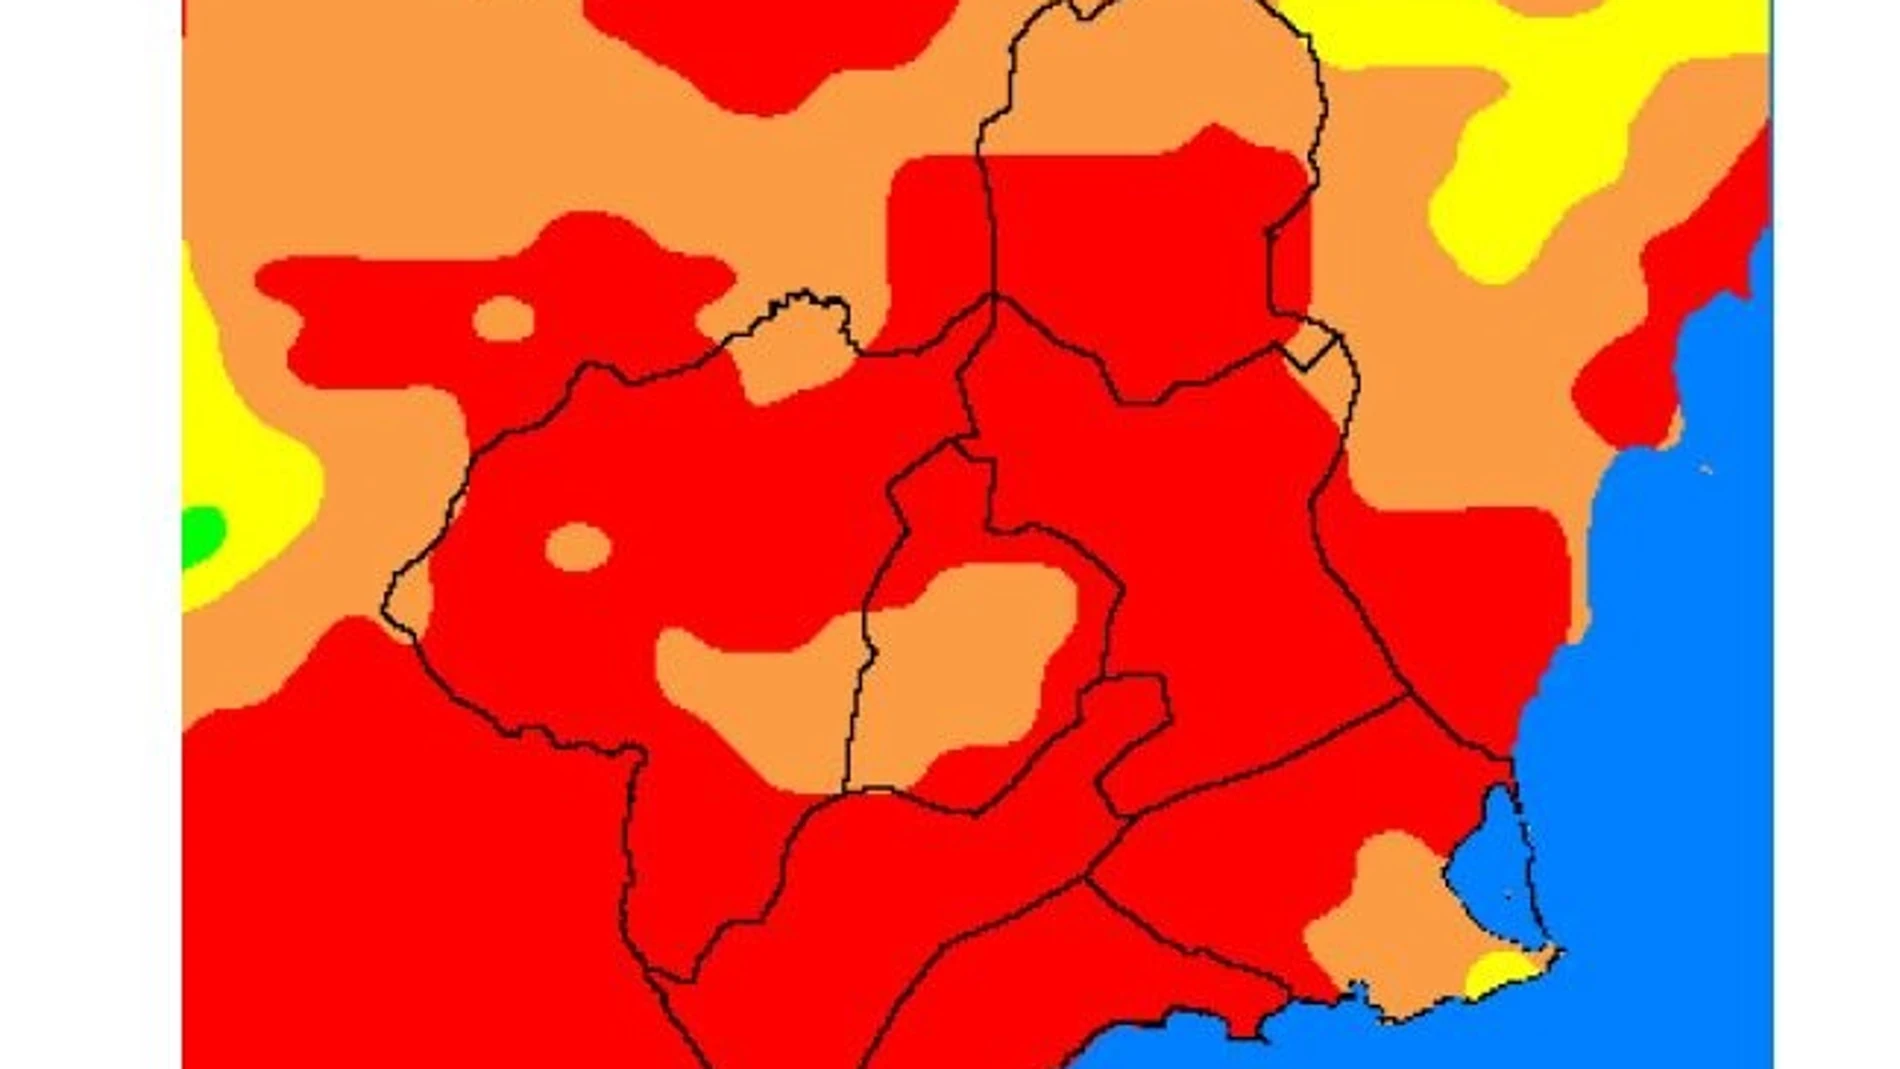 El nivel de riesgo de incendio forestal previsto para hoy es extremo en casi toda la Región